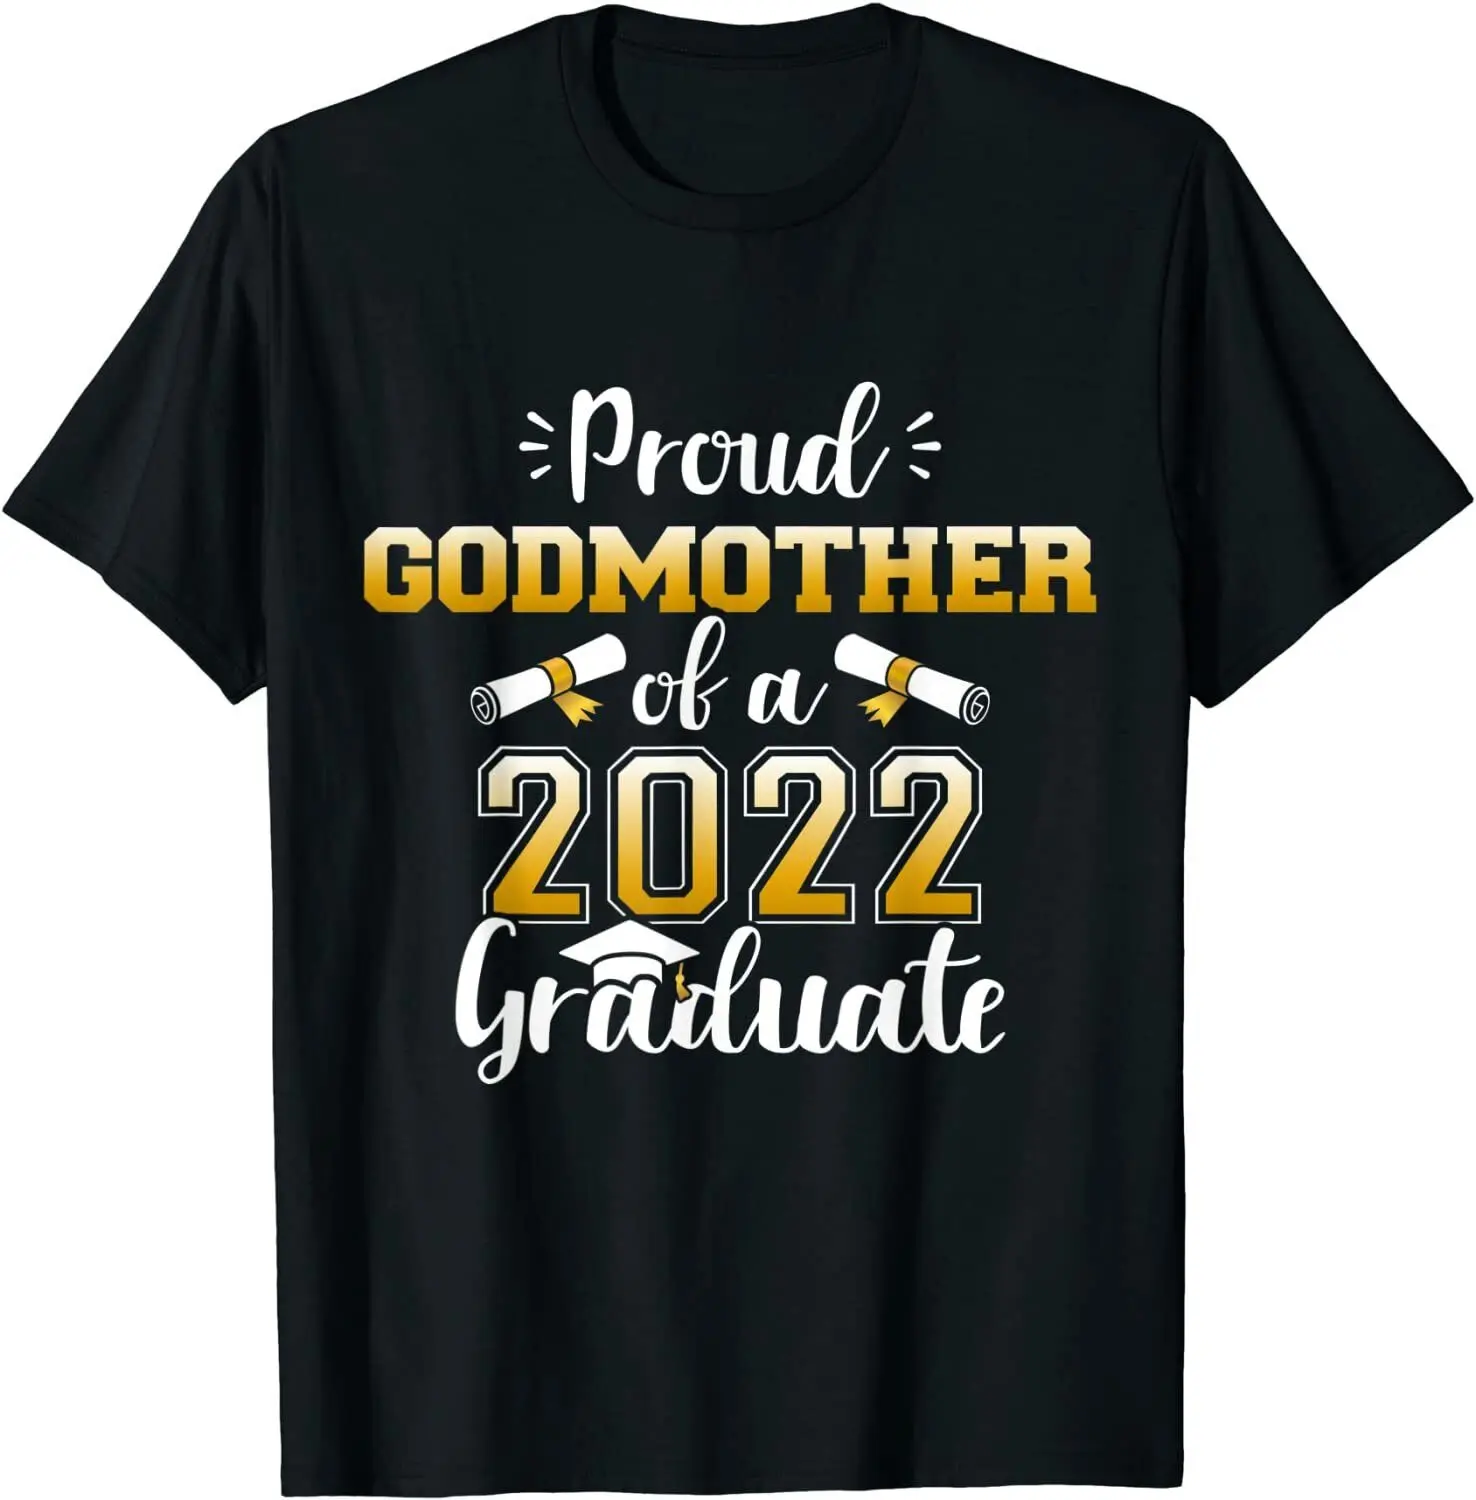 Proud Godmother Class Of 2022 Graduate O-Neck Cotton T Shirt Men Casual Short Sleeve Tees Tops Harajuku Streetwear